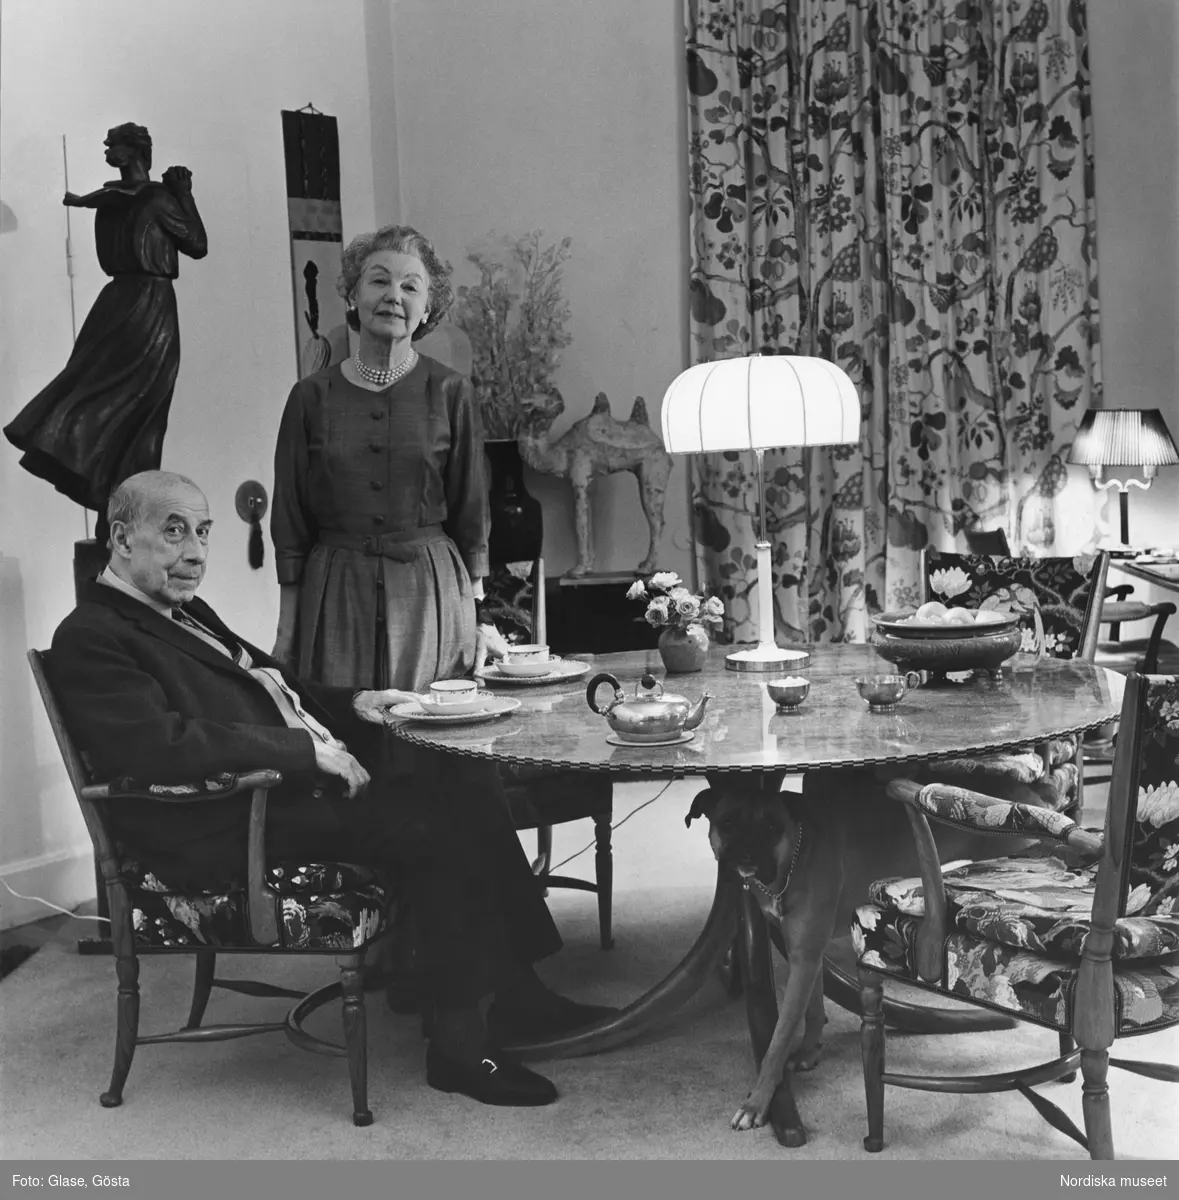 Svenskt Tenns grundare Estrid Ericson och hennes vän och medarbetare arkitekten Josef Frank tillsammans vid en matsalsmöbel. Bordet är dukat med tekoppar och kanna. Med på bilden är Estrids boxerhund.